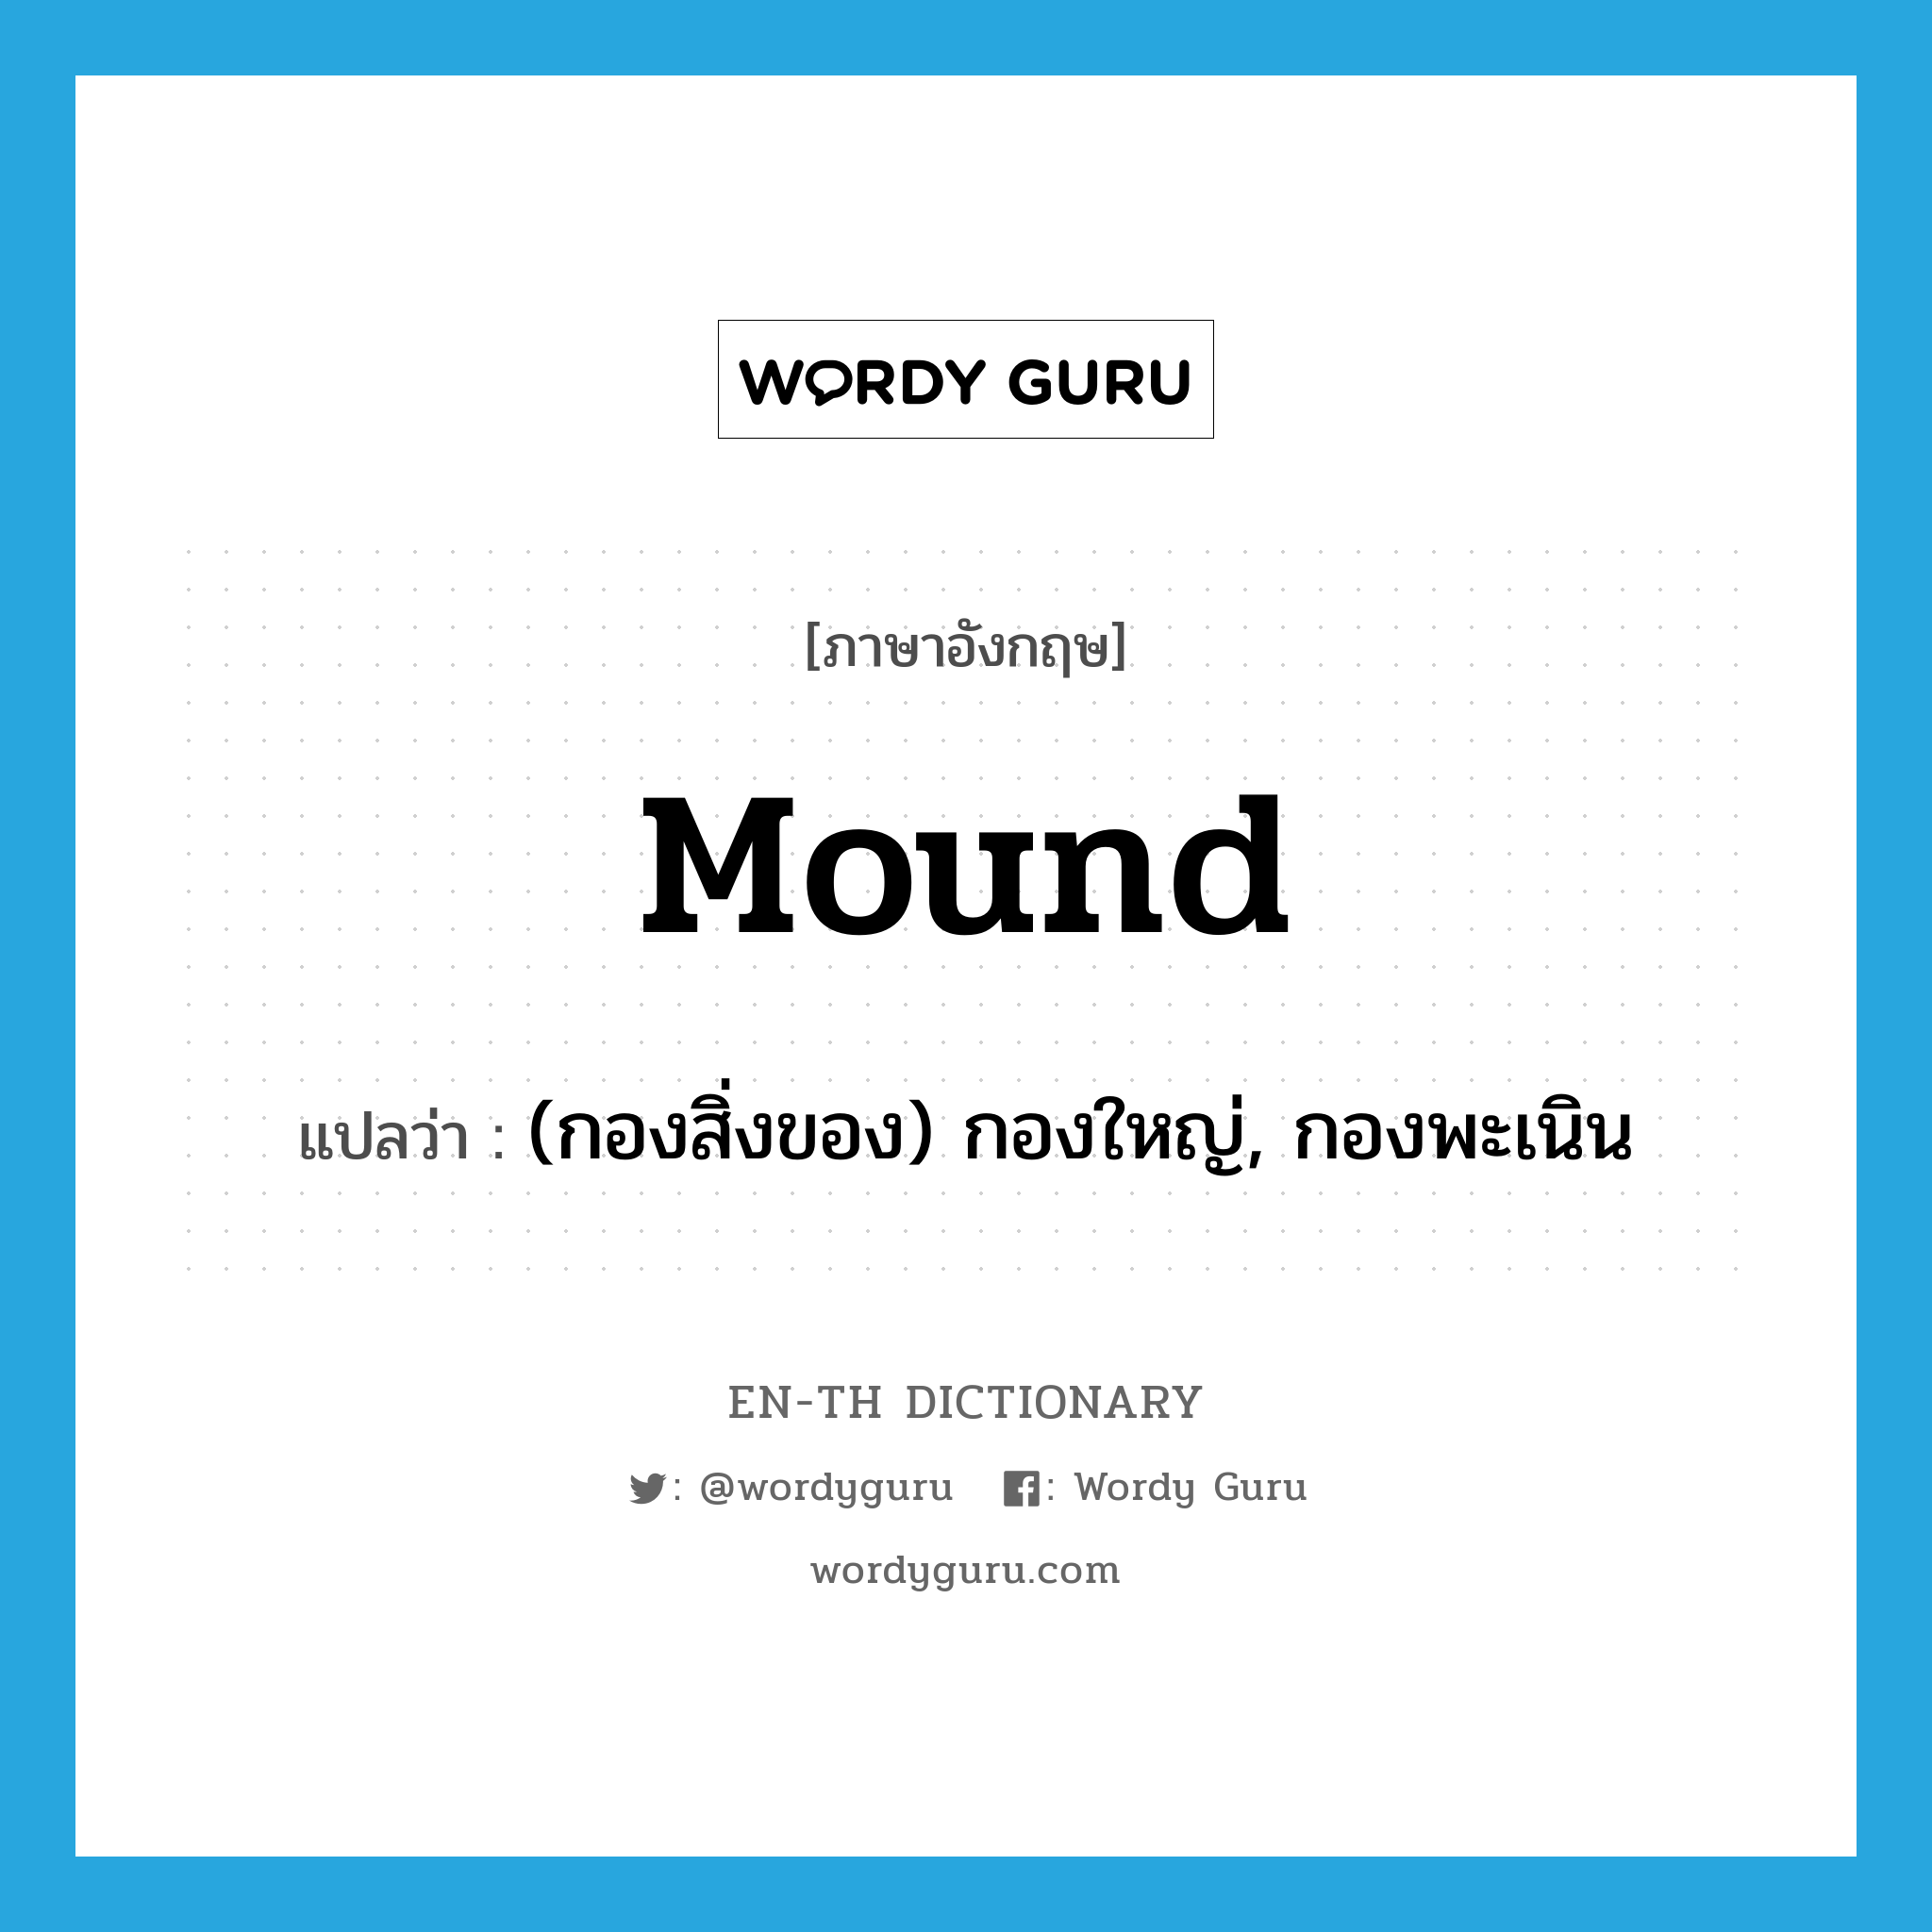 mound แปลว่า?, คำศัพท์ภาษาอังกฤษ mound แปลว่า (กองสิ่งของ) กองใหญ่, กองพะเนิน ประเภท N หมวด N